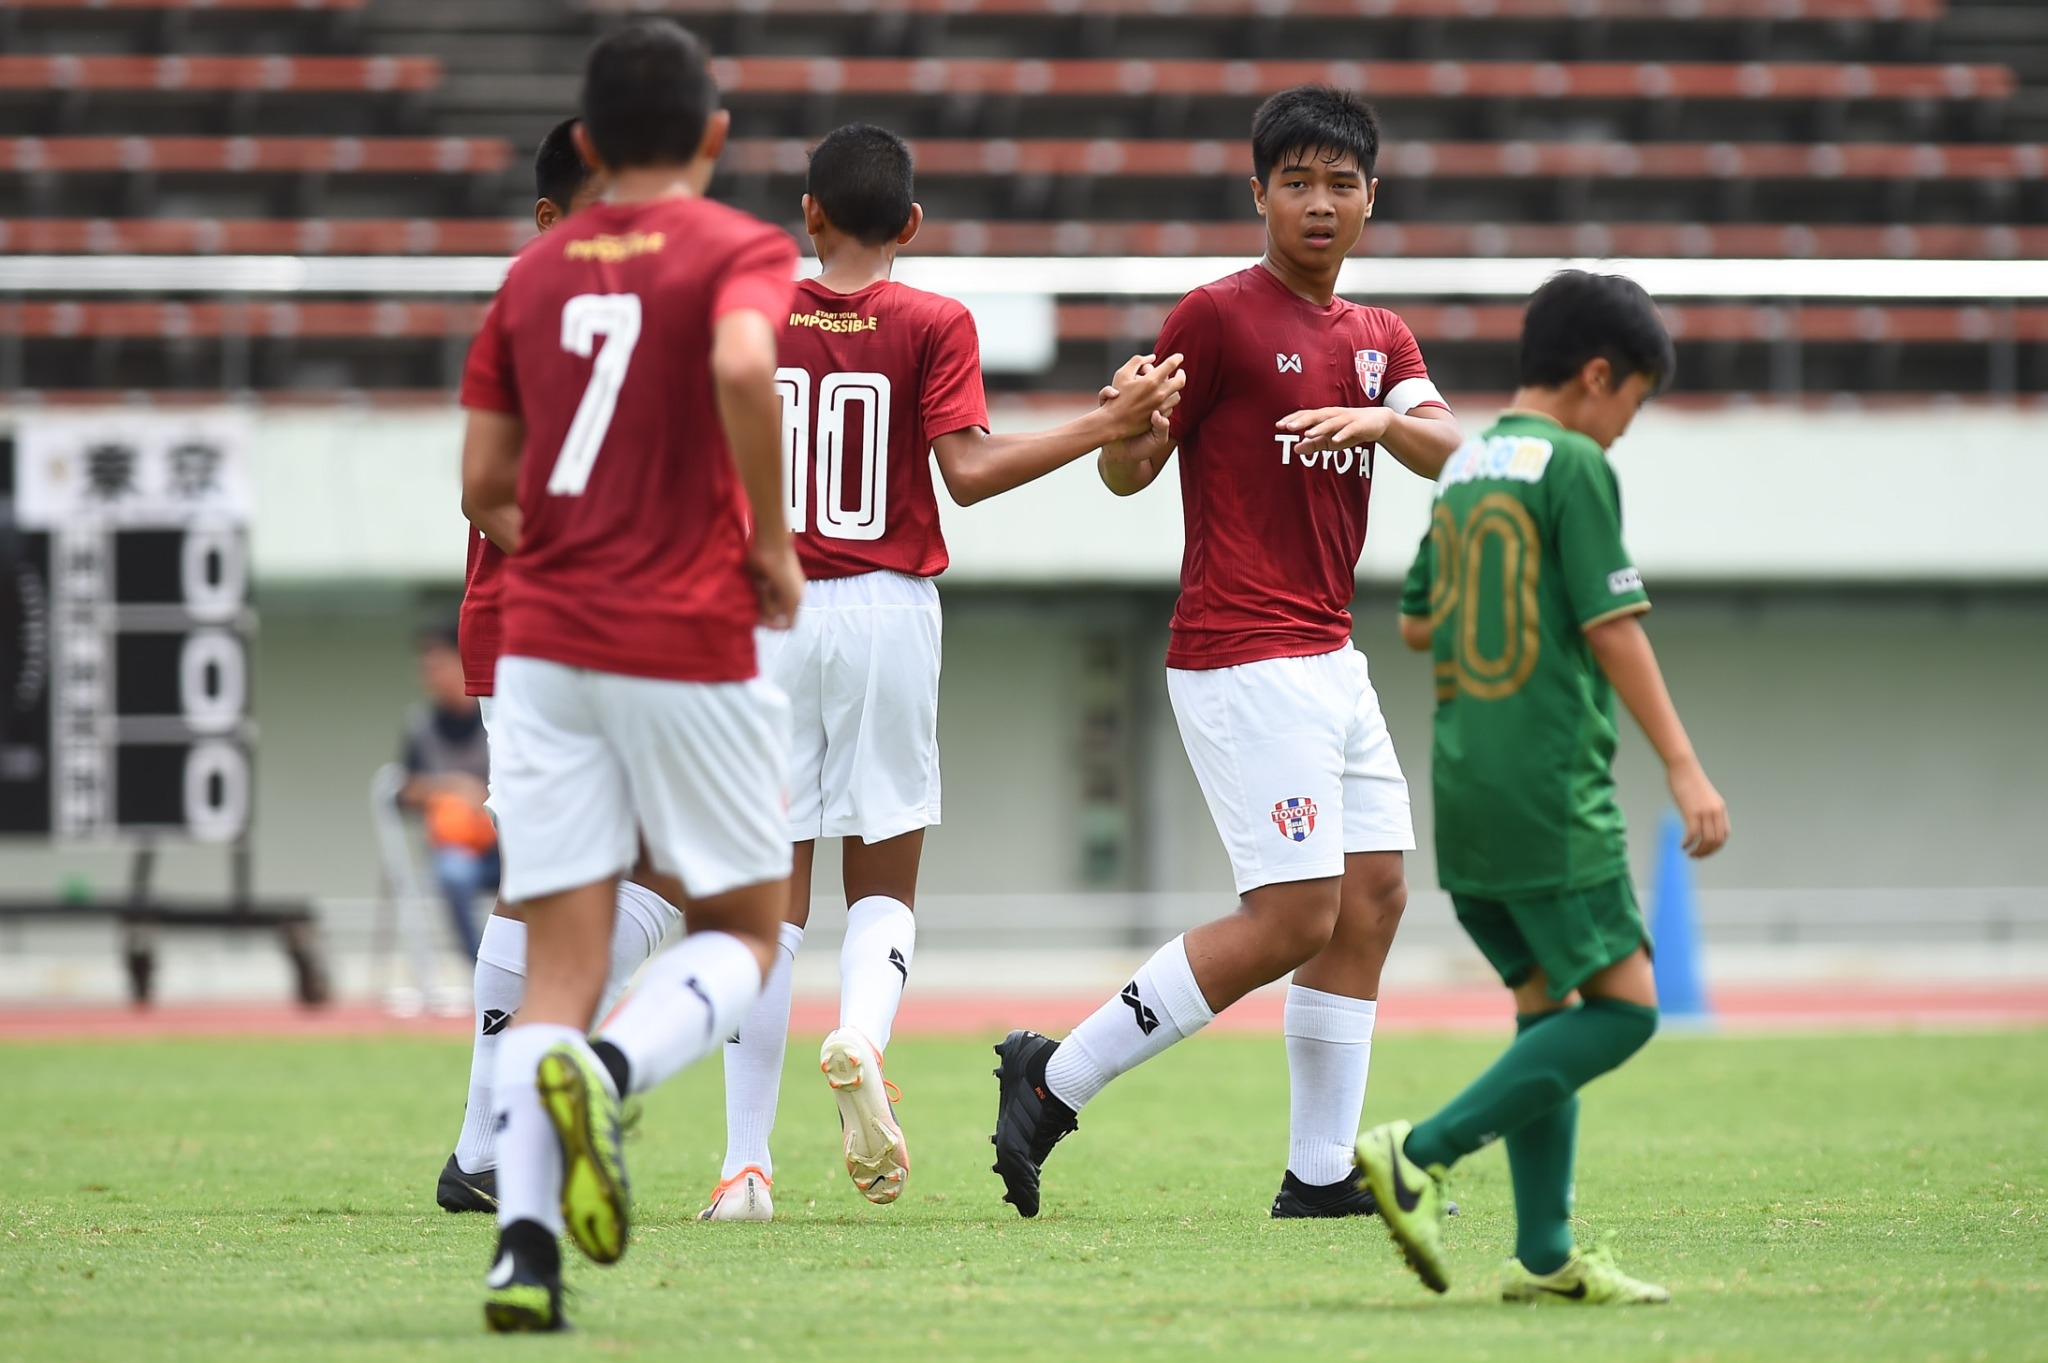 U-12 U-12 Junior soccer world challenge 2019 ทีมชาติไทย โอซาก้า